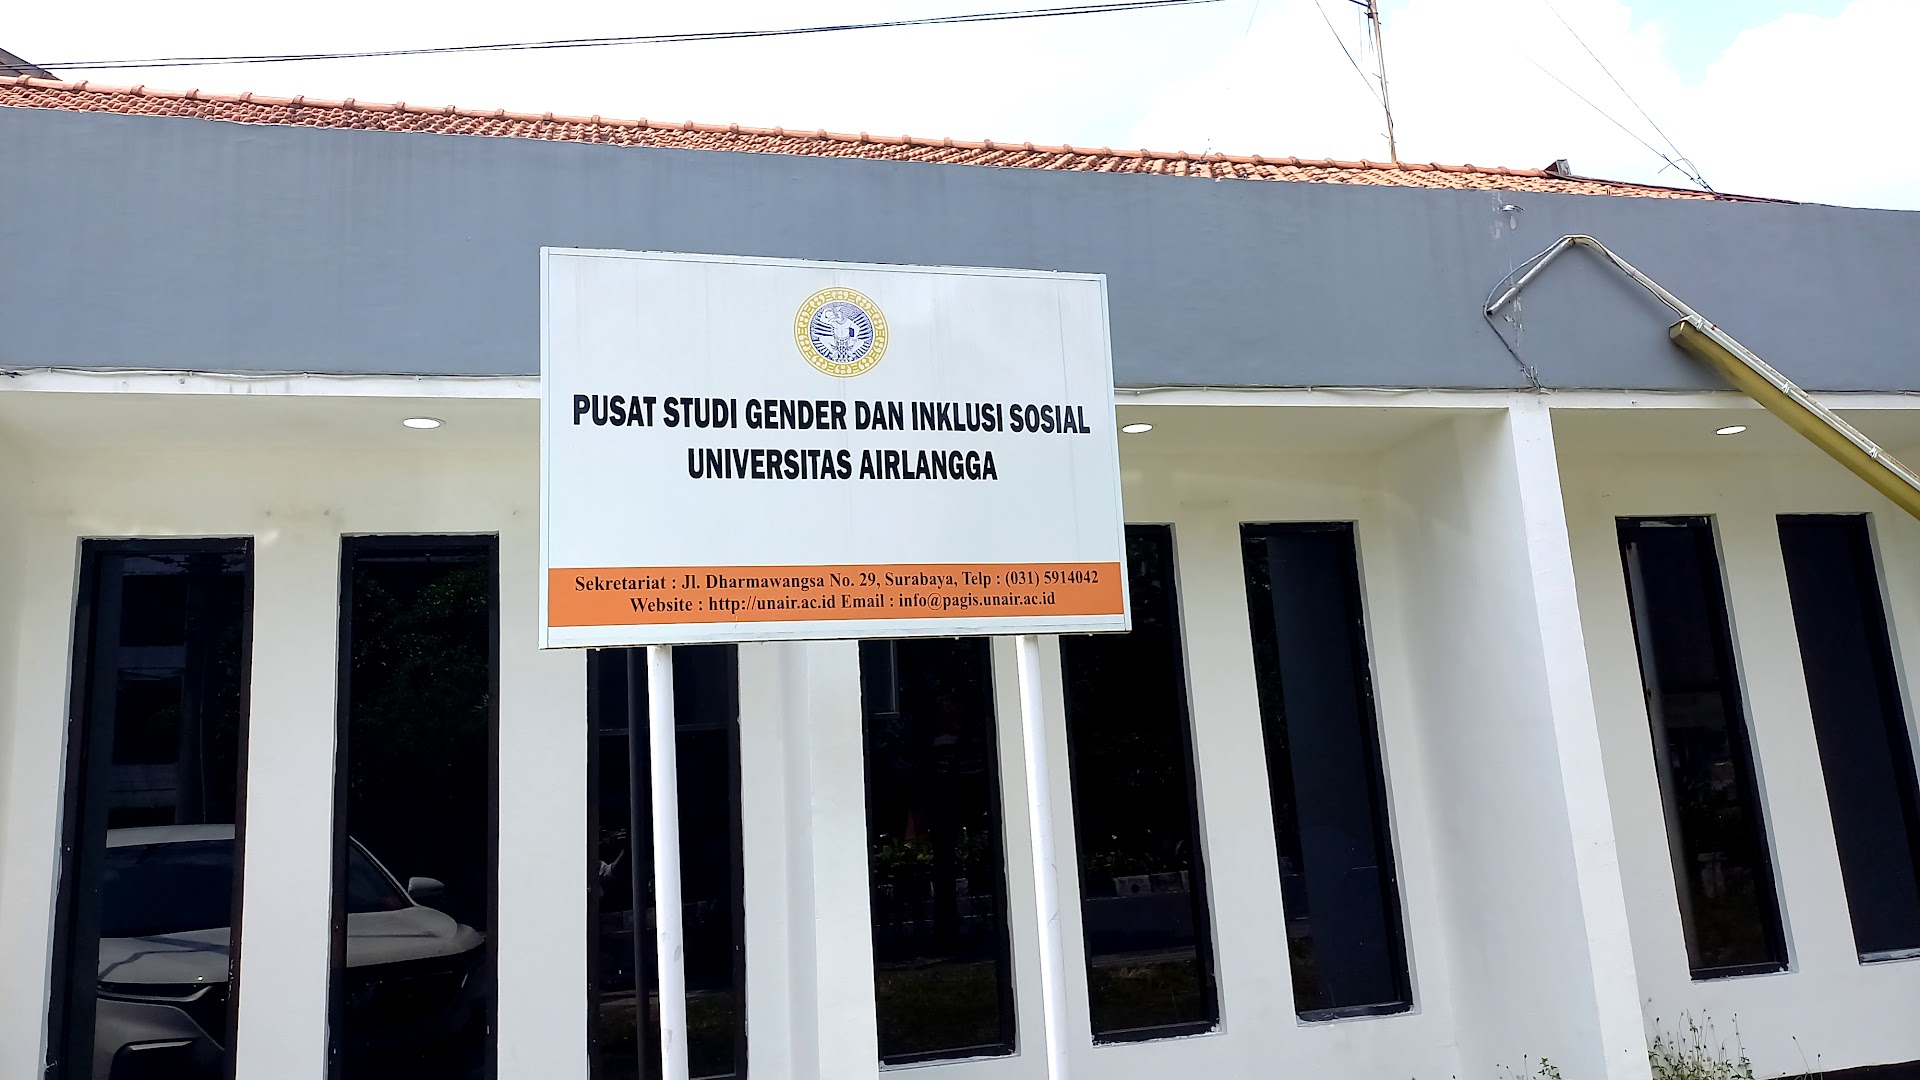 Pusat Studi Gender Dan Inklusi Sosial Universitas Airlangga Photo